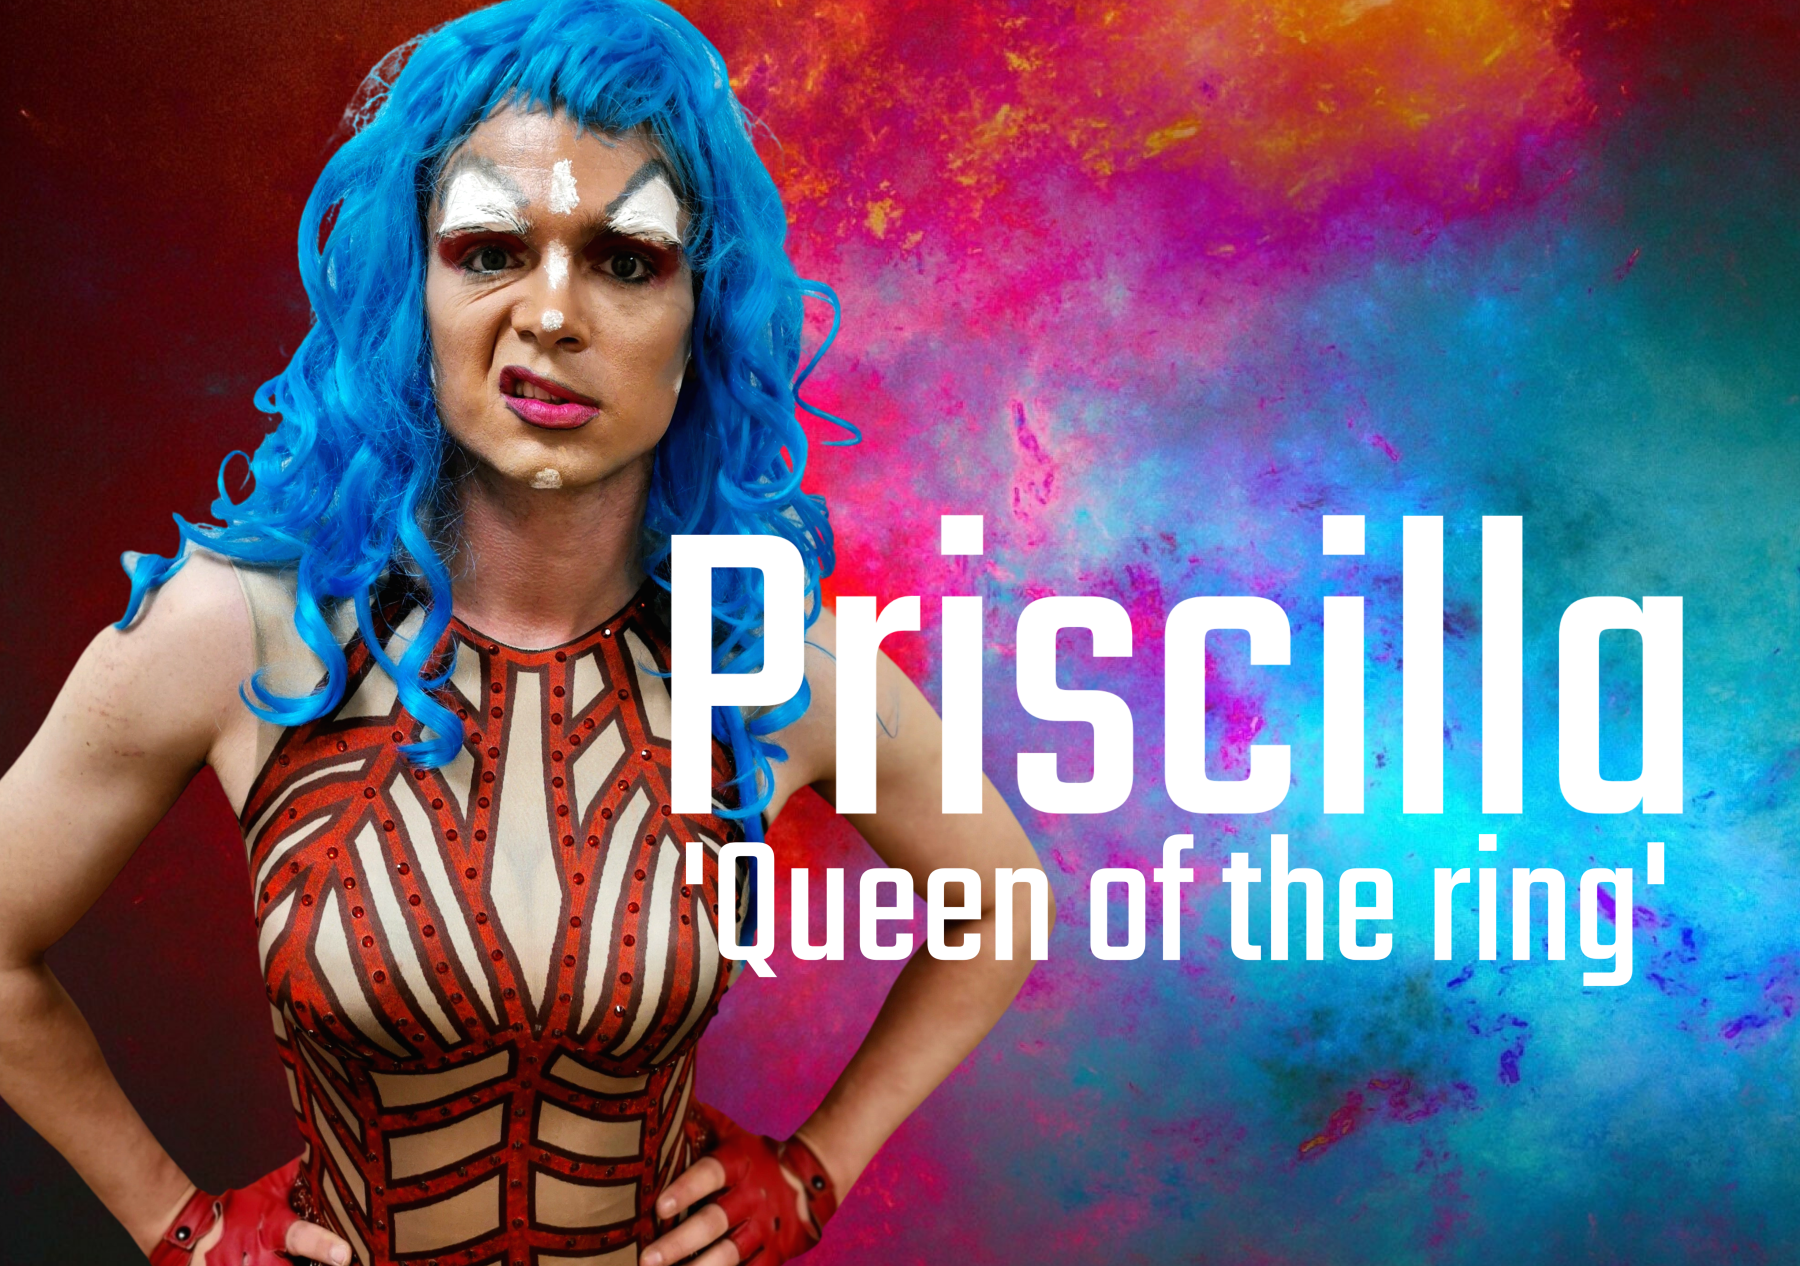 Meet Priscilla, queen of the wrestling ring